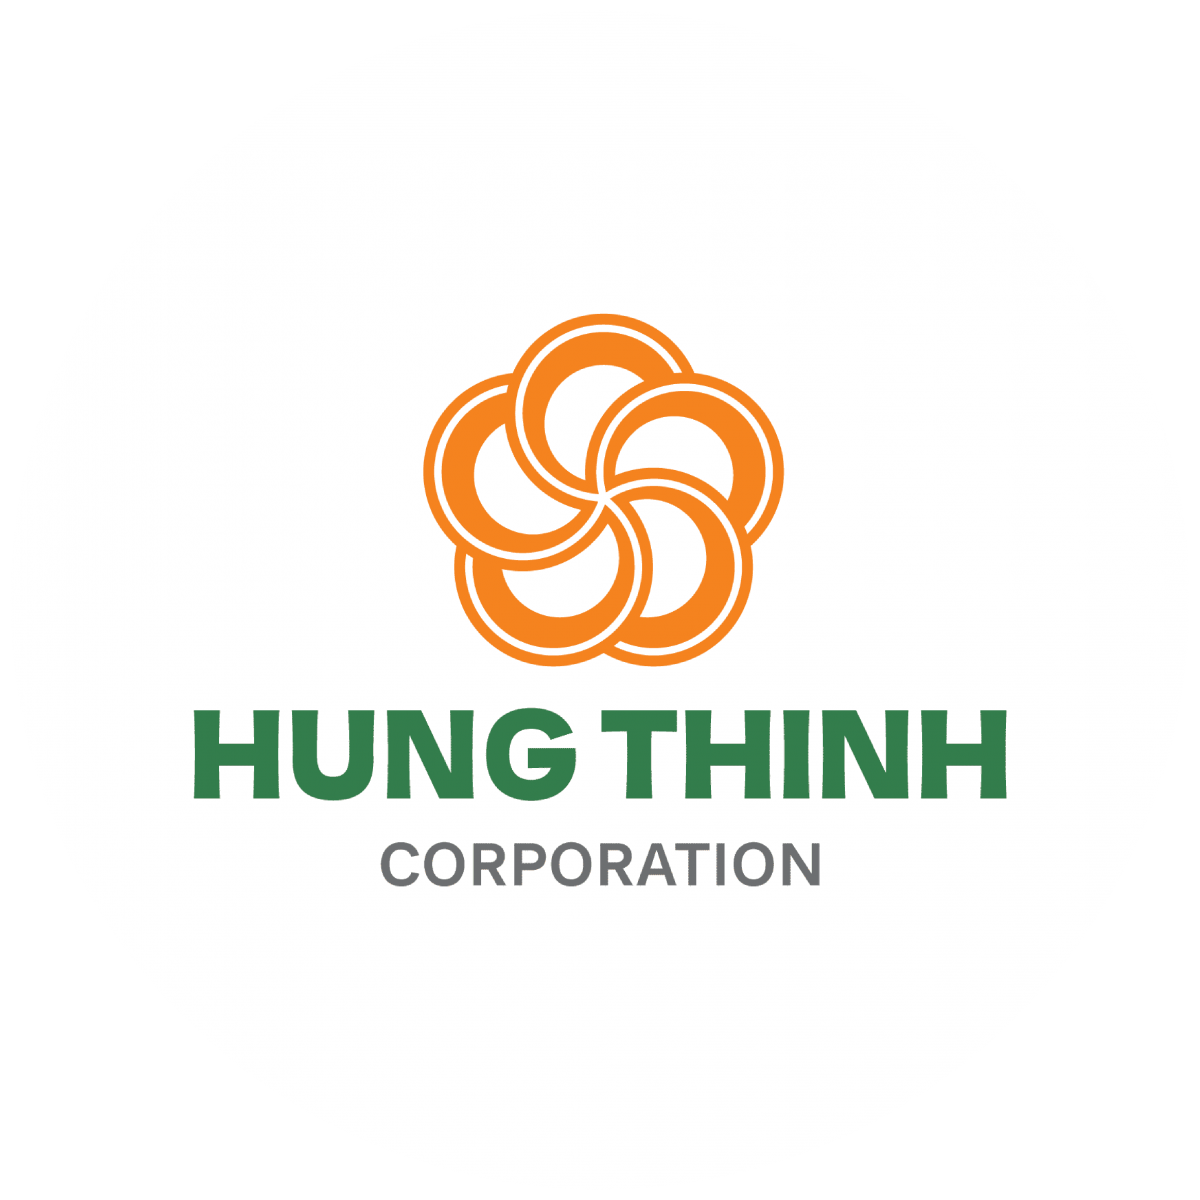 Hưng Thịnh Corporation